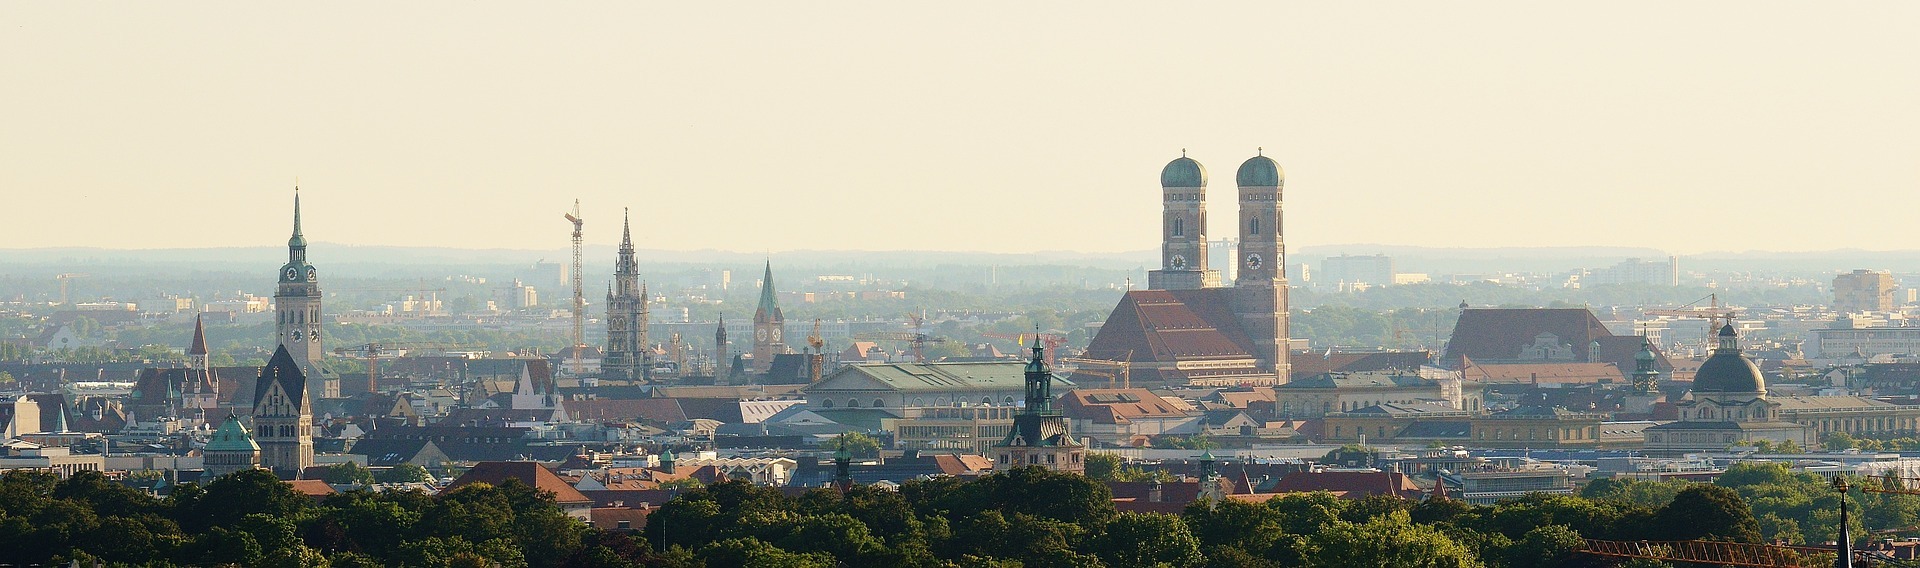 Monachium jest jednym z najdroższych miast w Niemczech